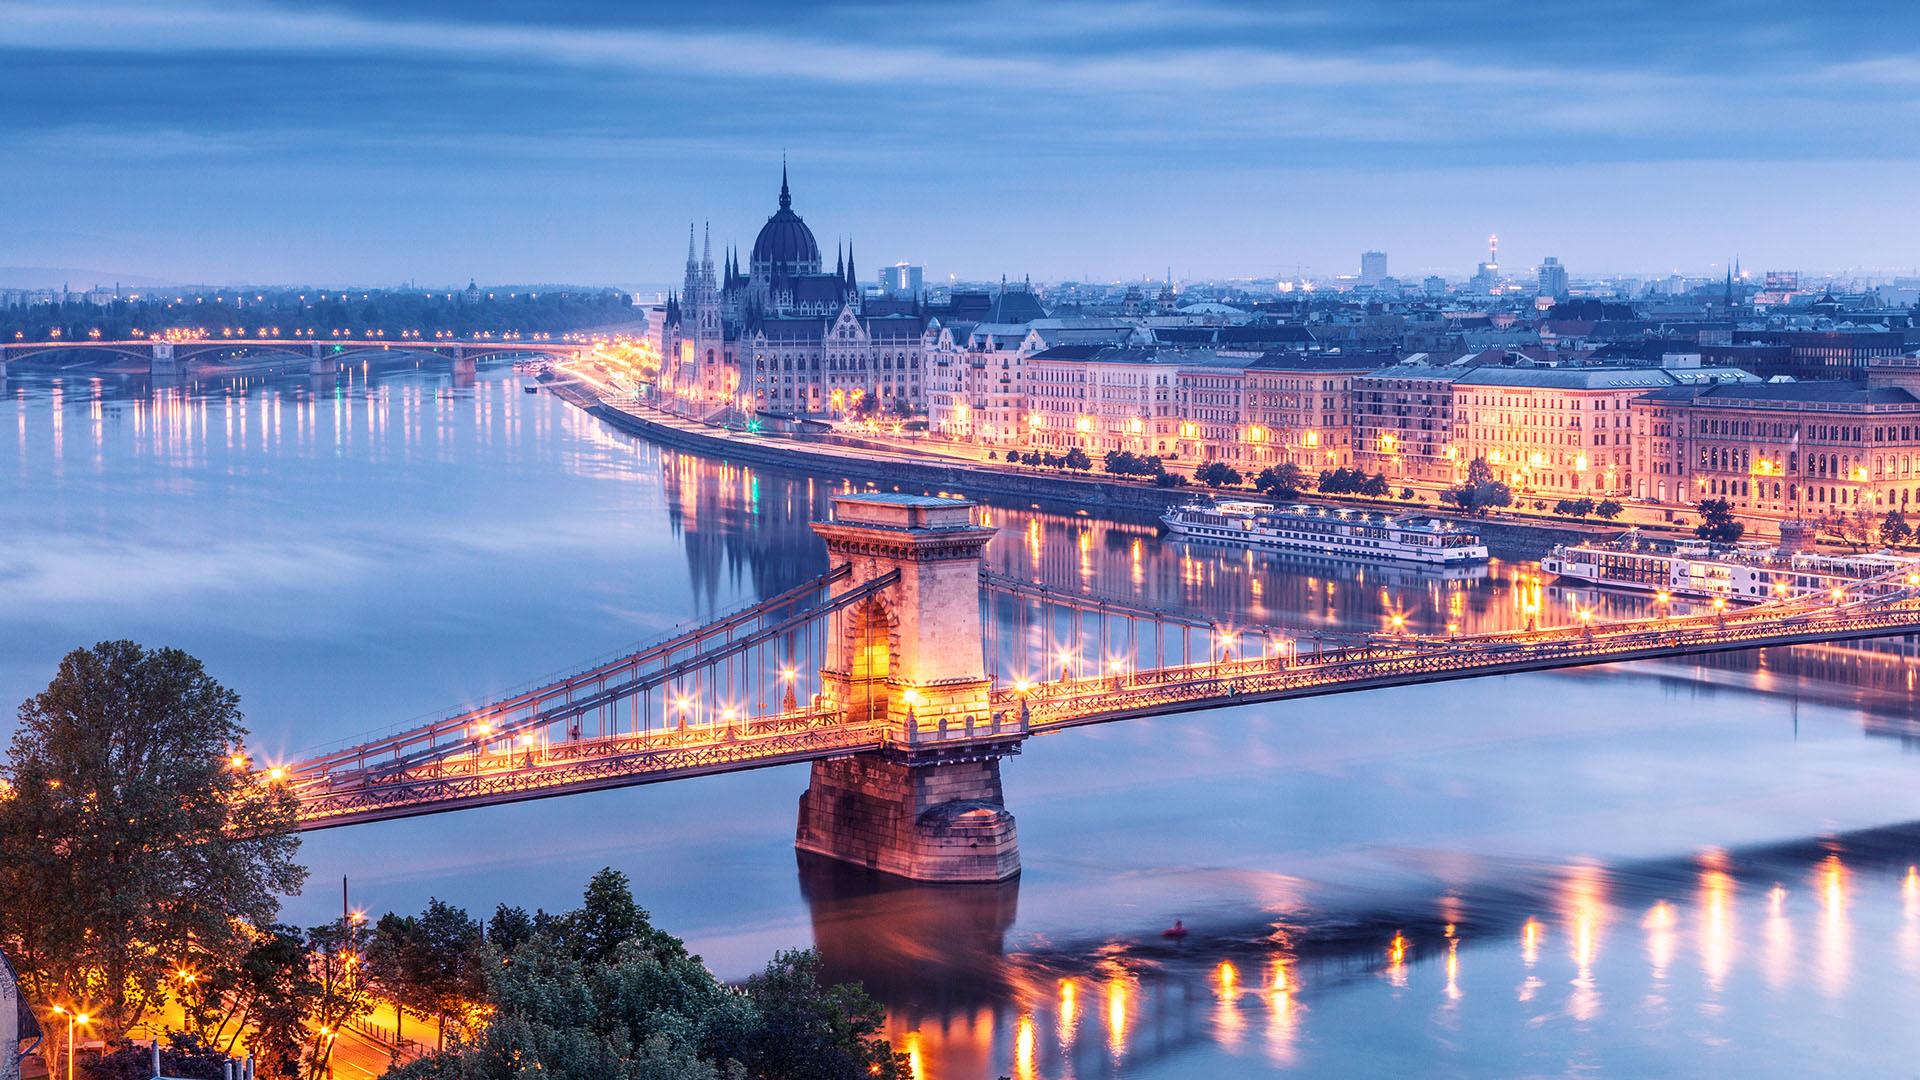 Thủ đô Budapest của Hungary được các tín đồ du lịch bình chọn là điểm đến tốt nhất châu Âu 2019